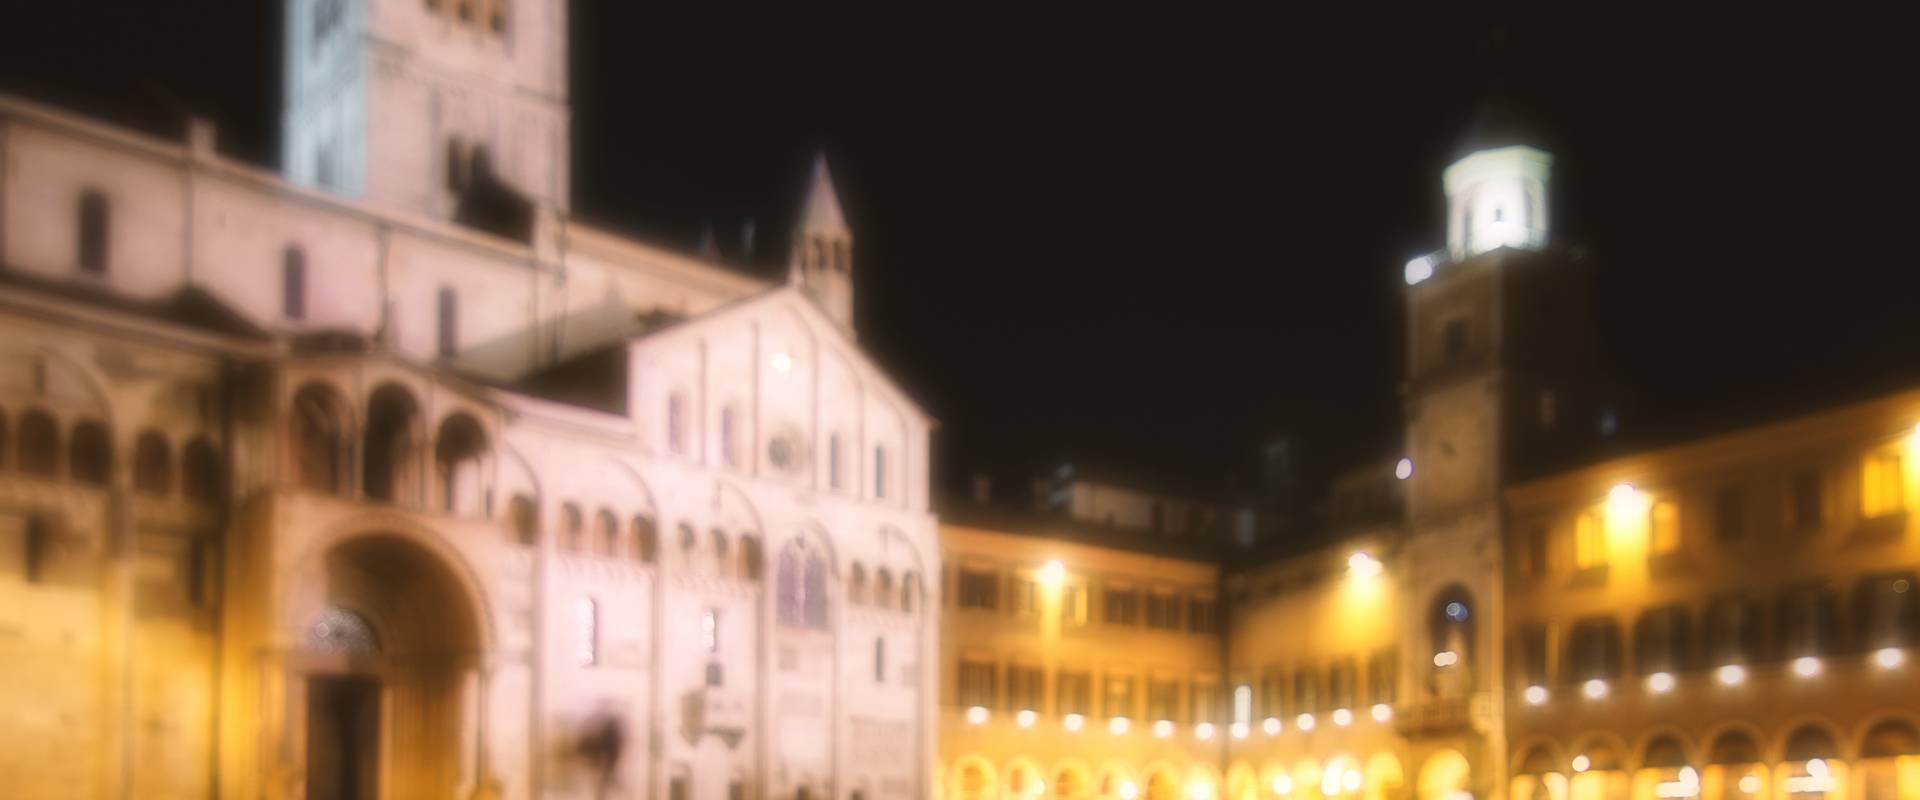 Torre Ghirlandina Modena di notte foto di Lara zanarini